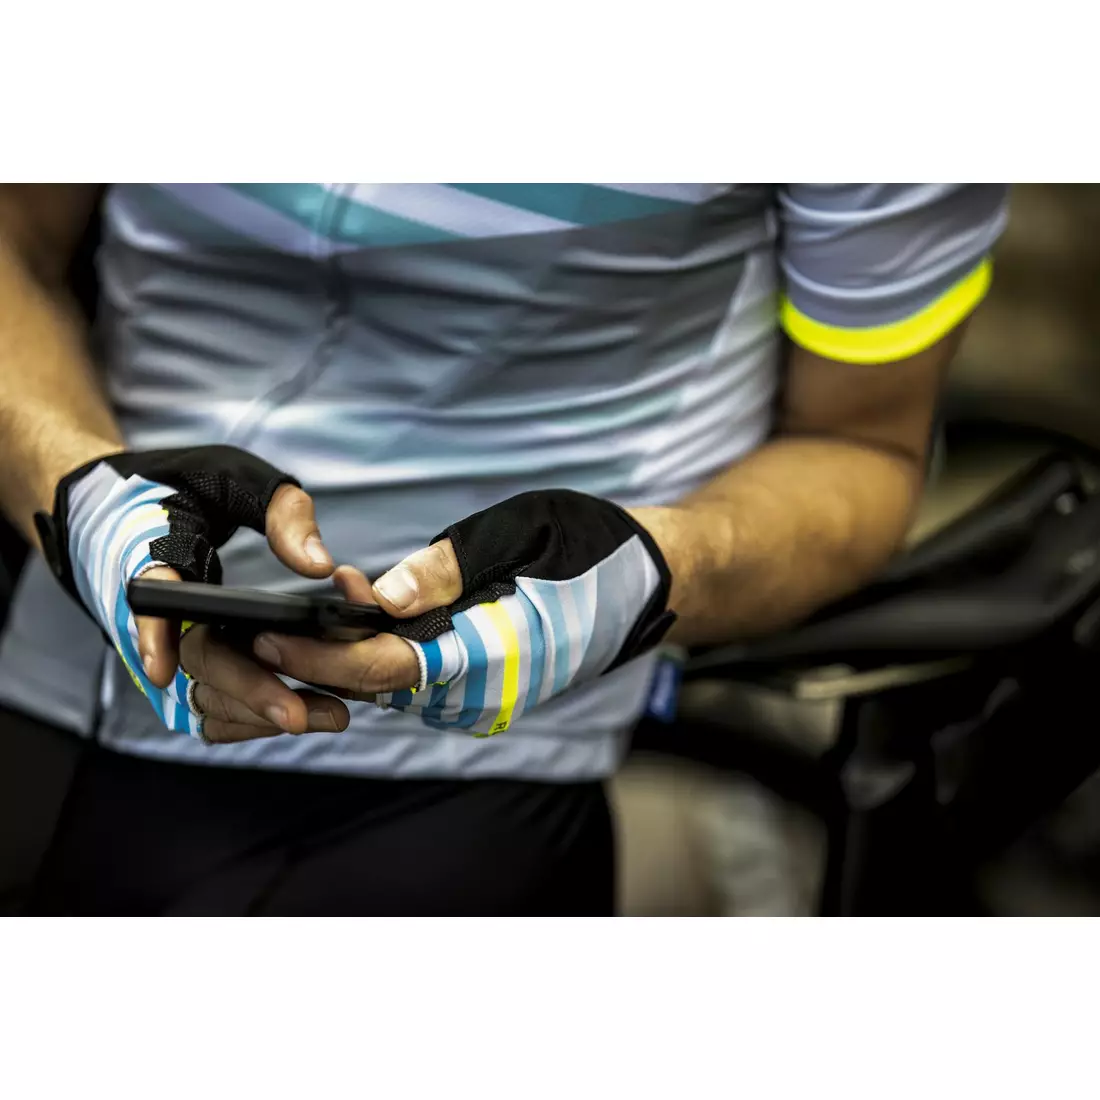 ROGELLI men's cycling gloves STRIPE blue/fluor 006.311